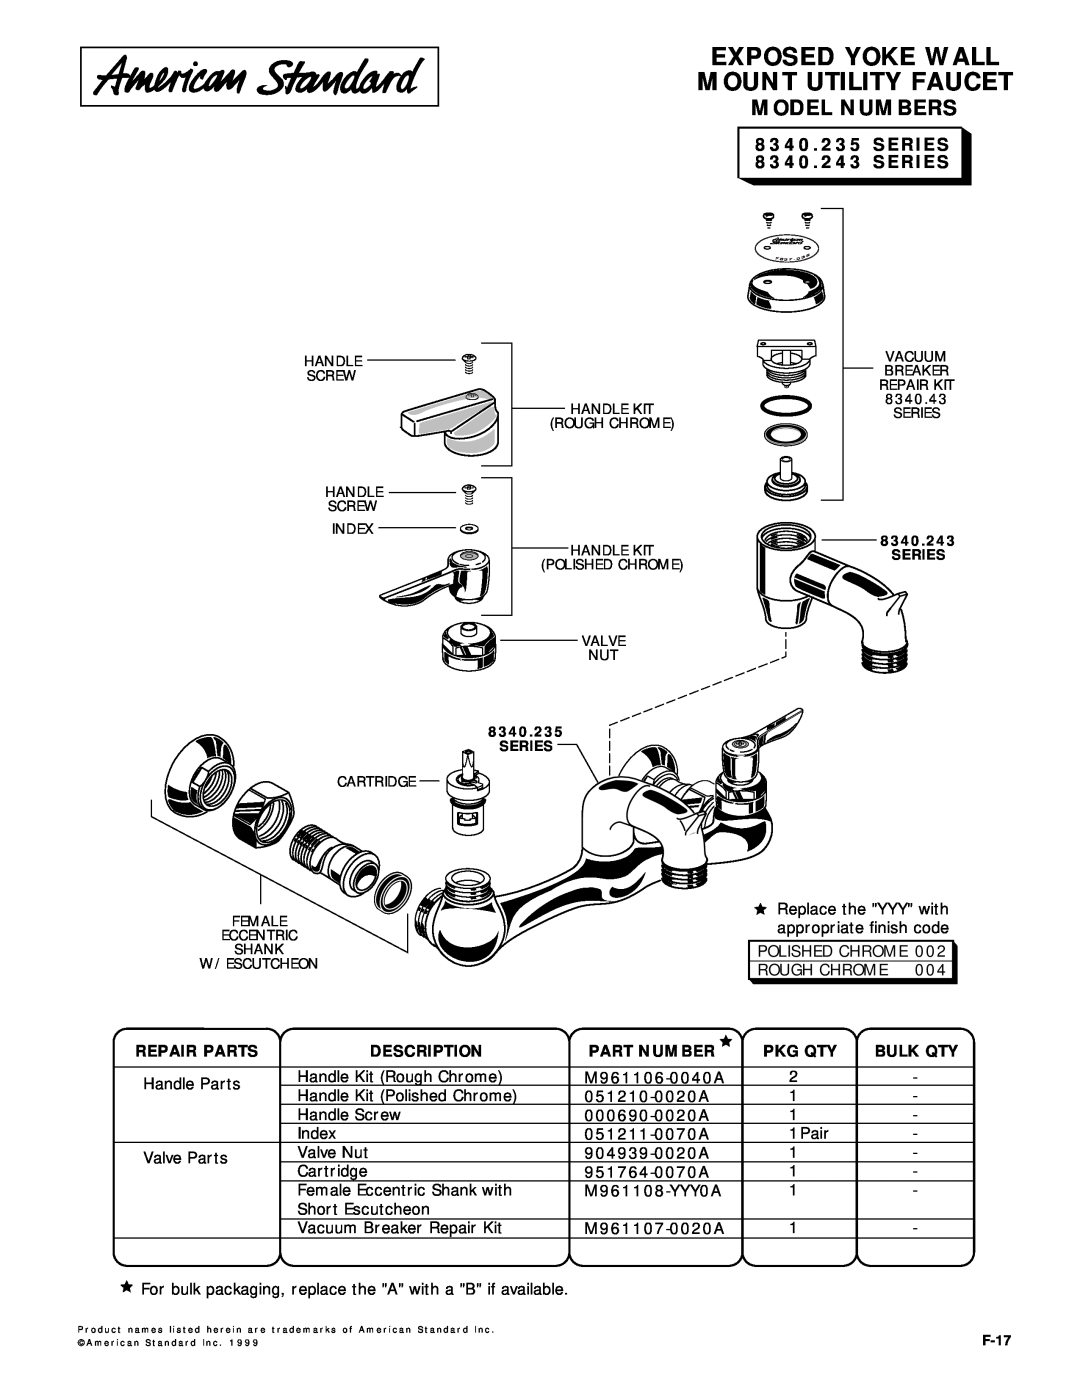 American Standard manual Exposed Yoke Wall Mount Utility Faucet, Model Numbers, SERIES 8340.243 SERIES, Repair Parts 